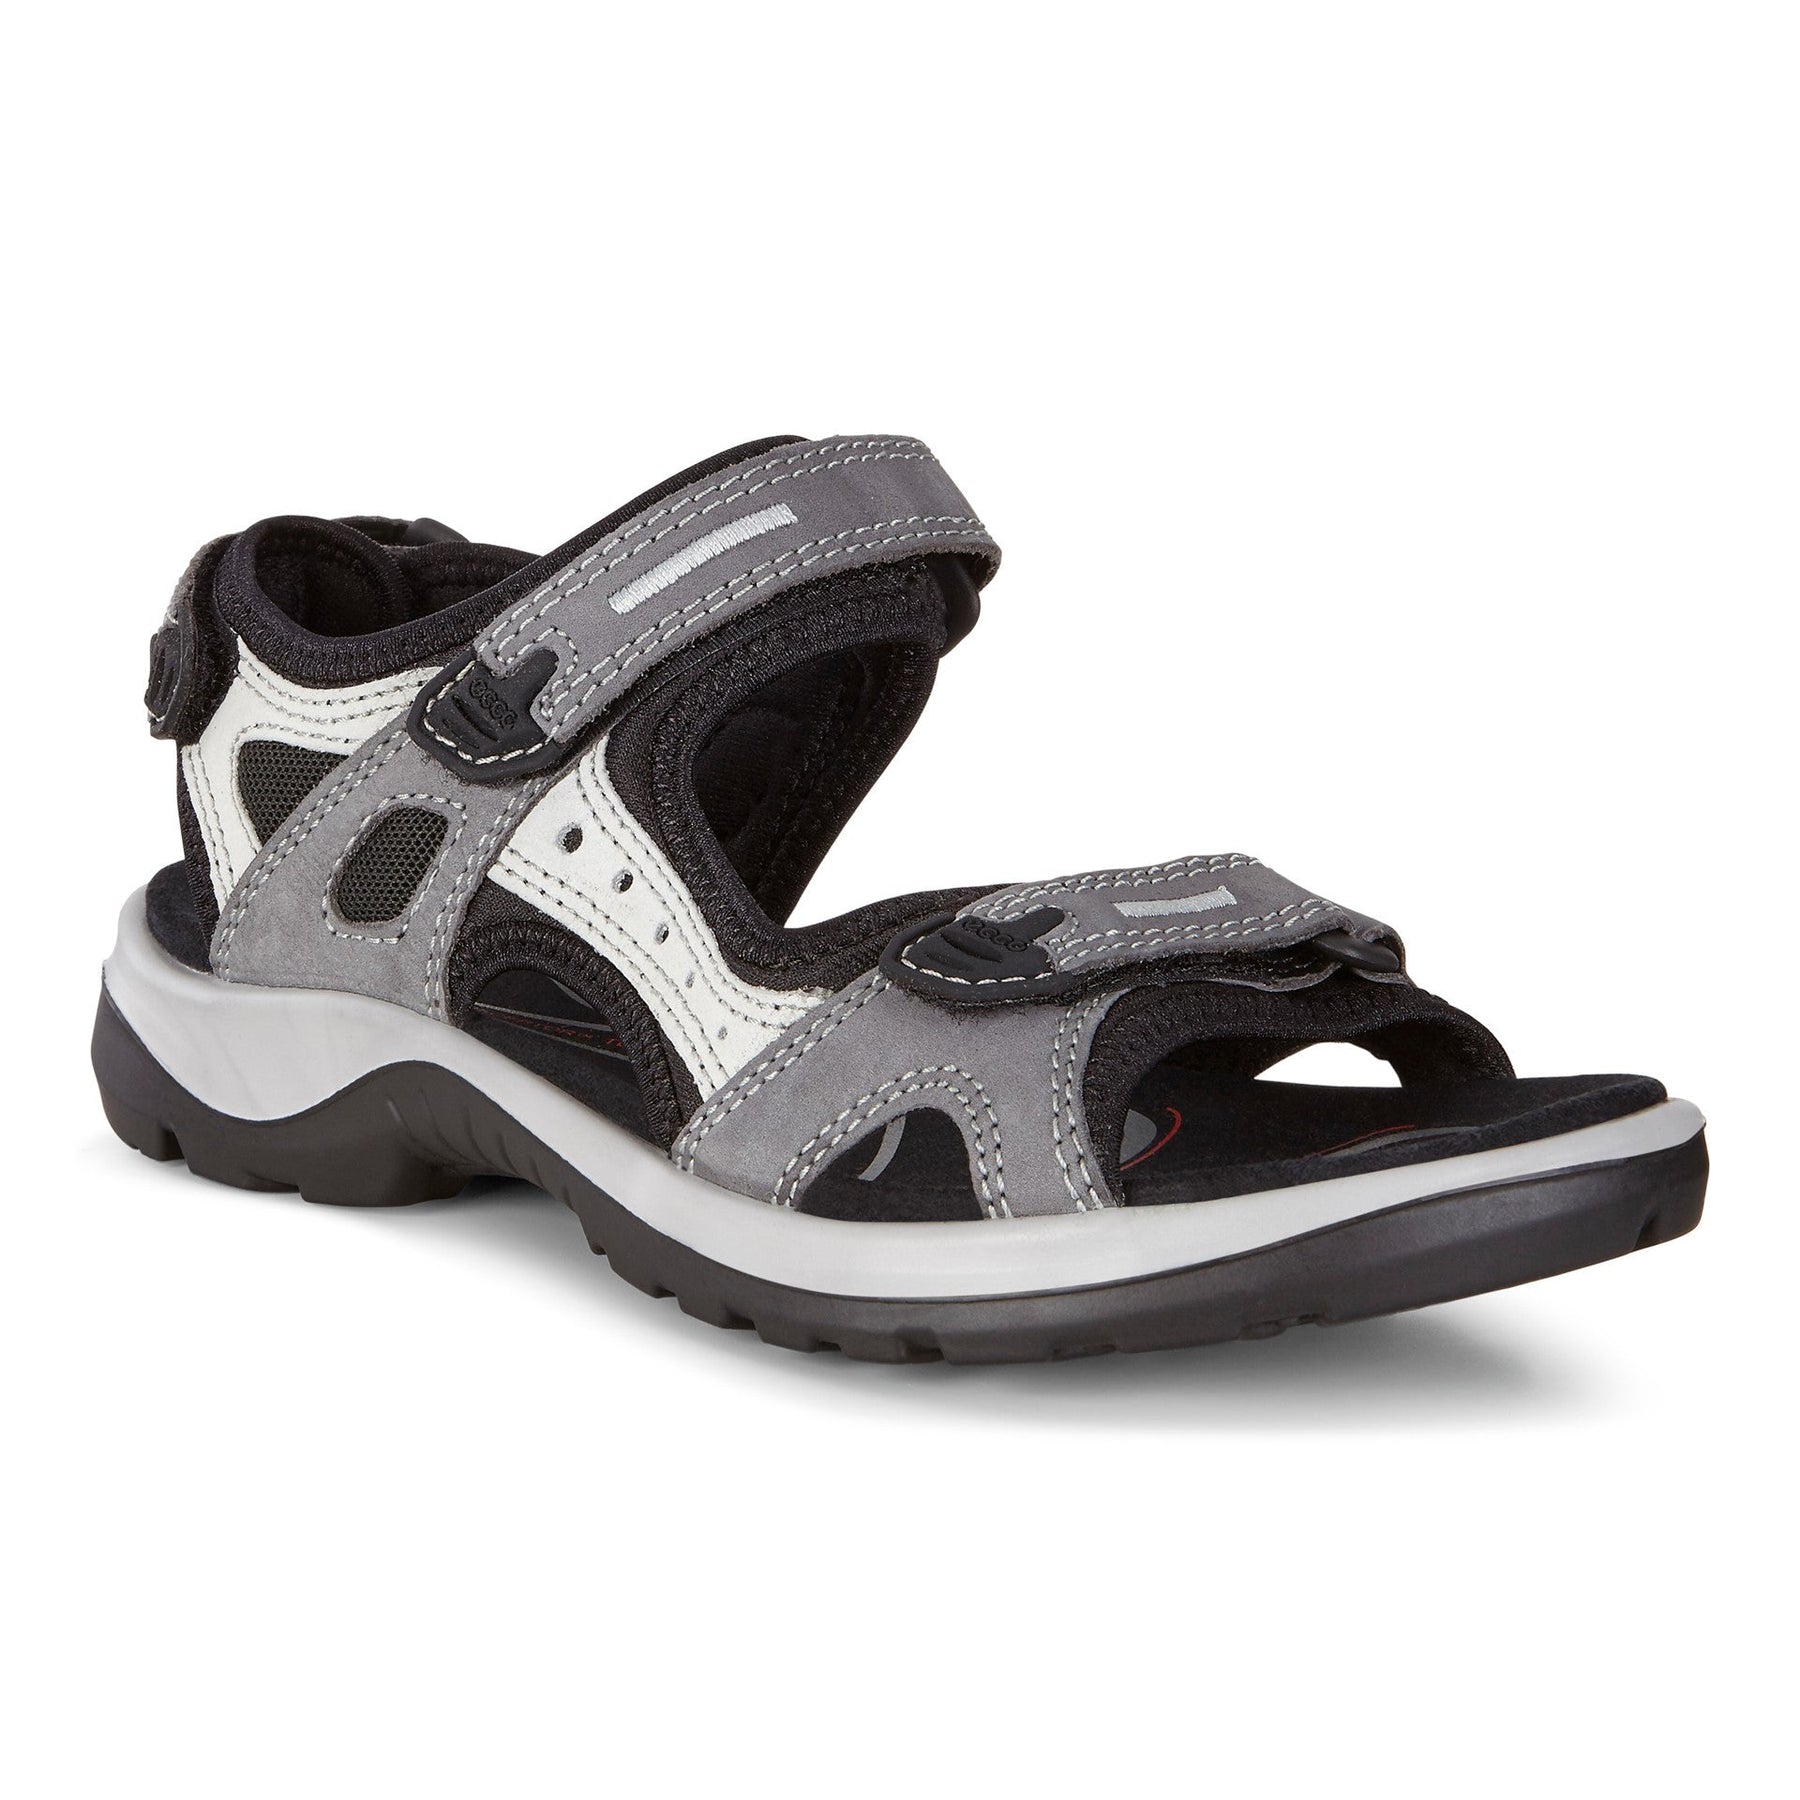 Ecco sandal model 069563 str 35-43